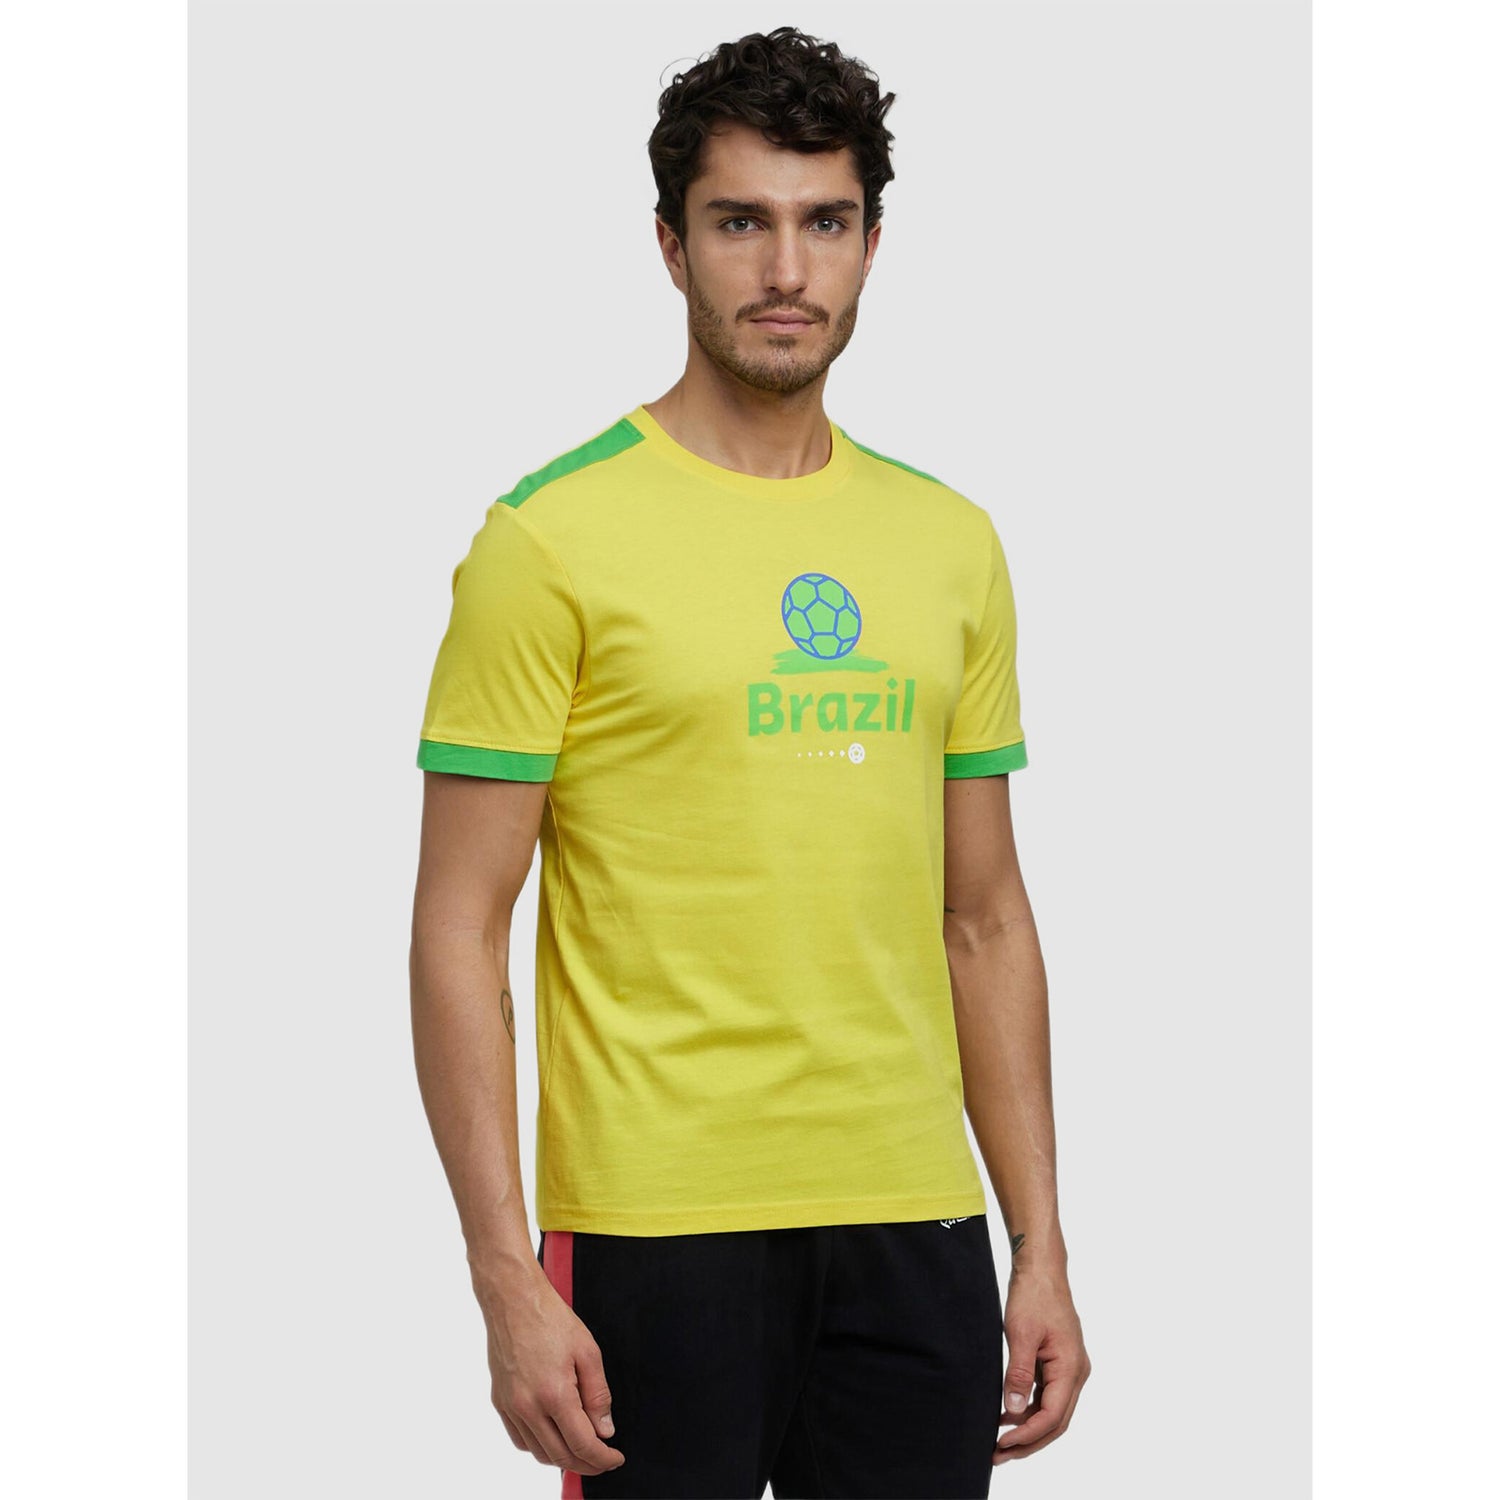 FIFA - Yellow Printed Cotton T-shirt (LCEFIFAC2)